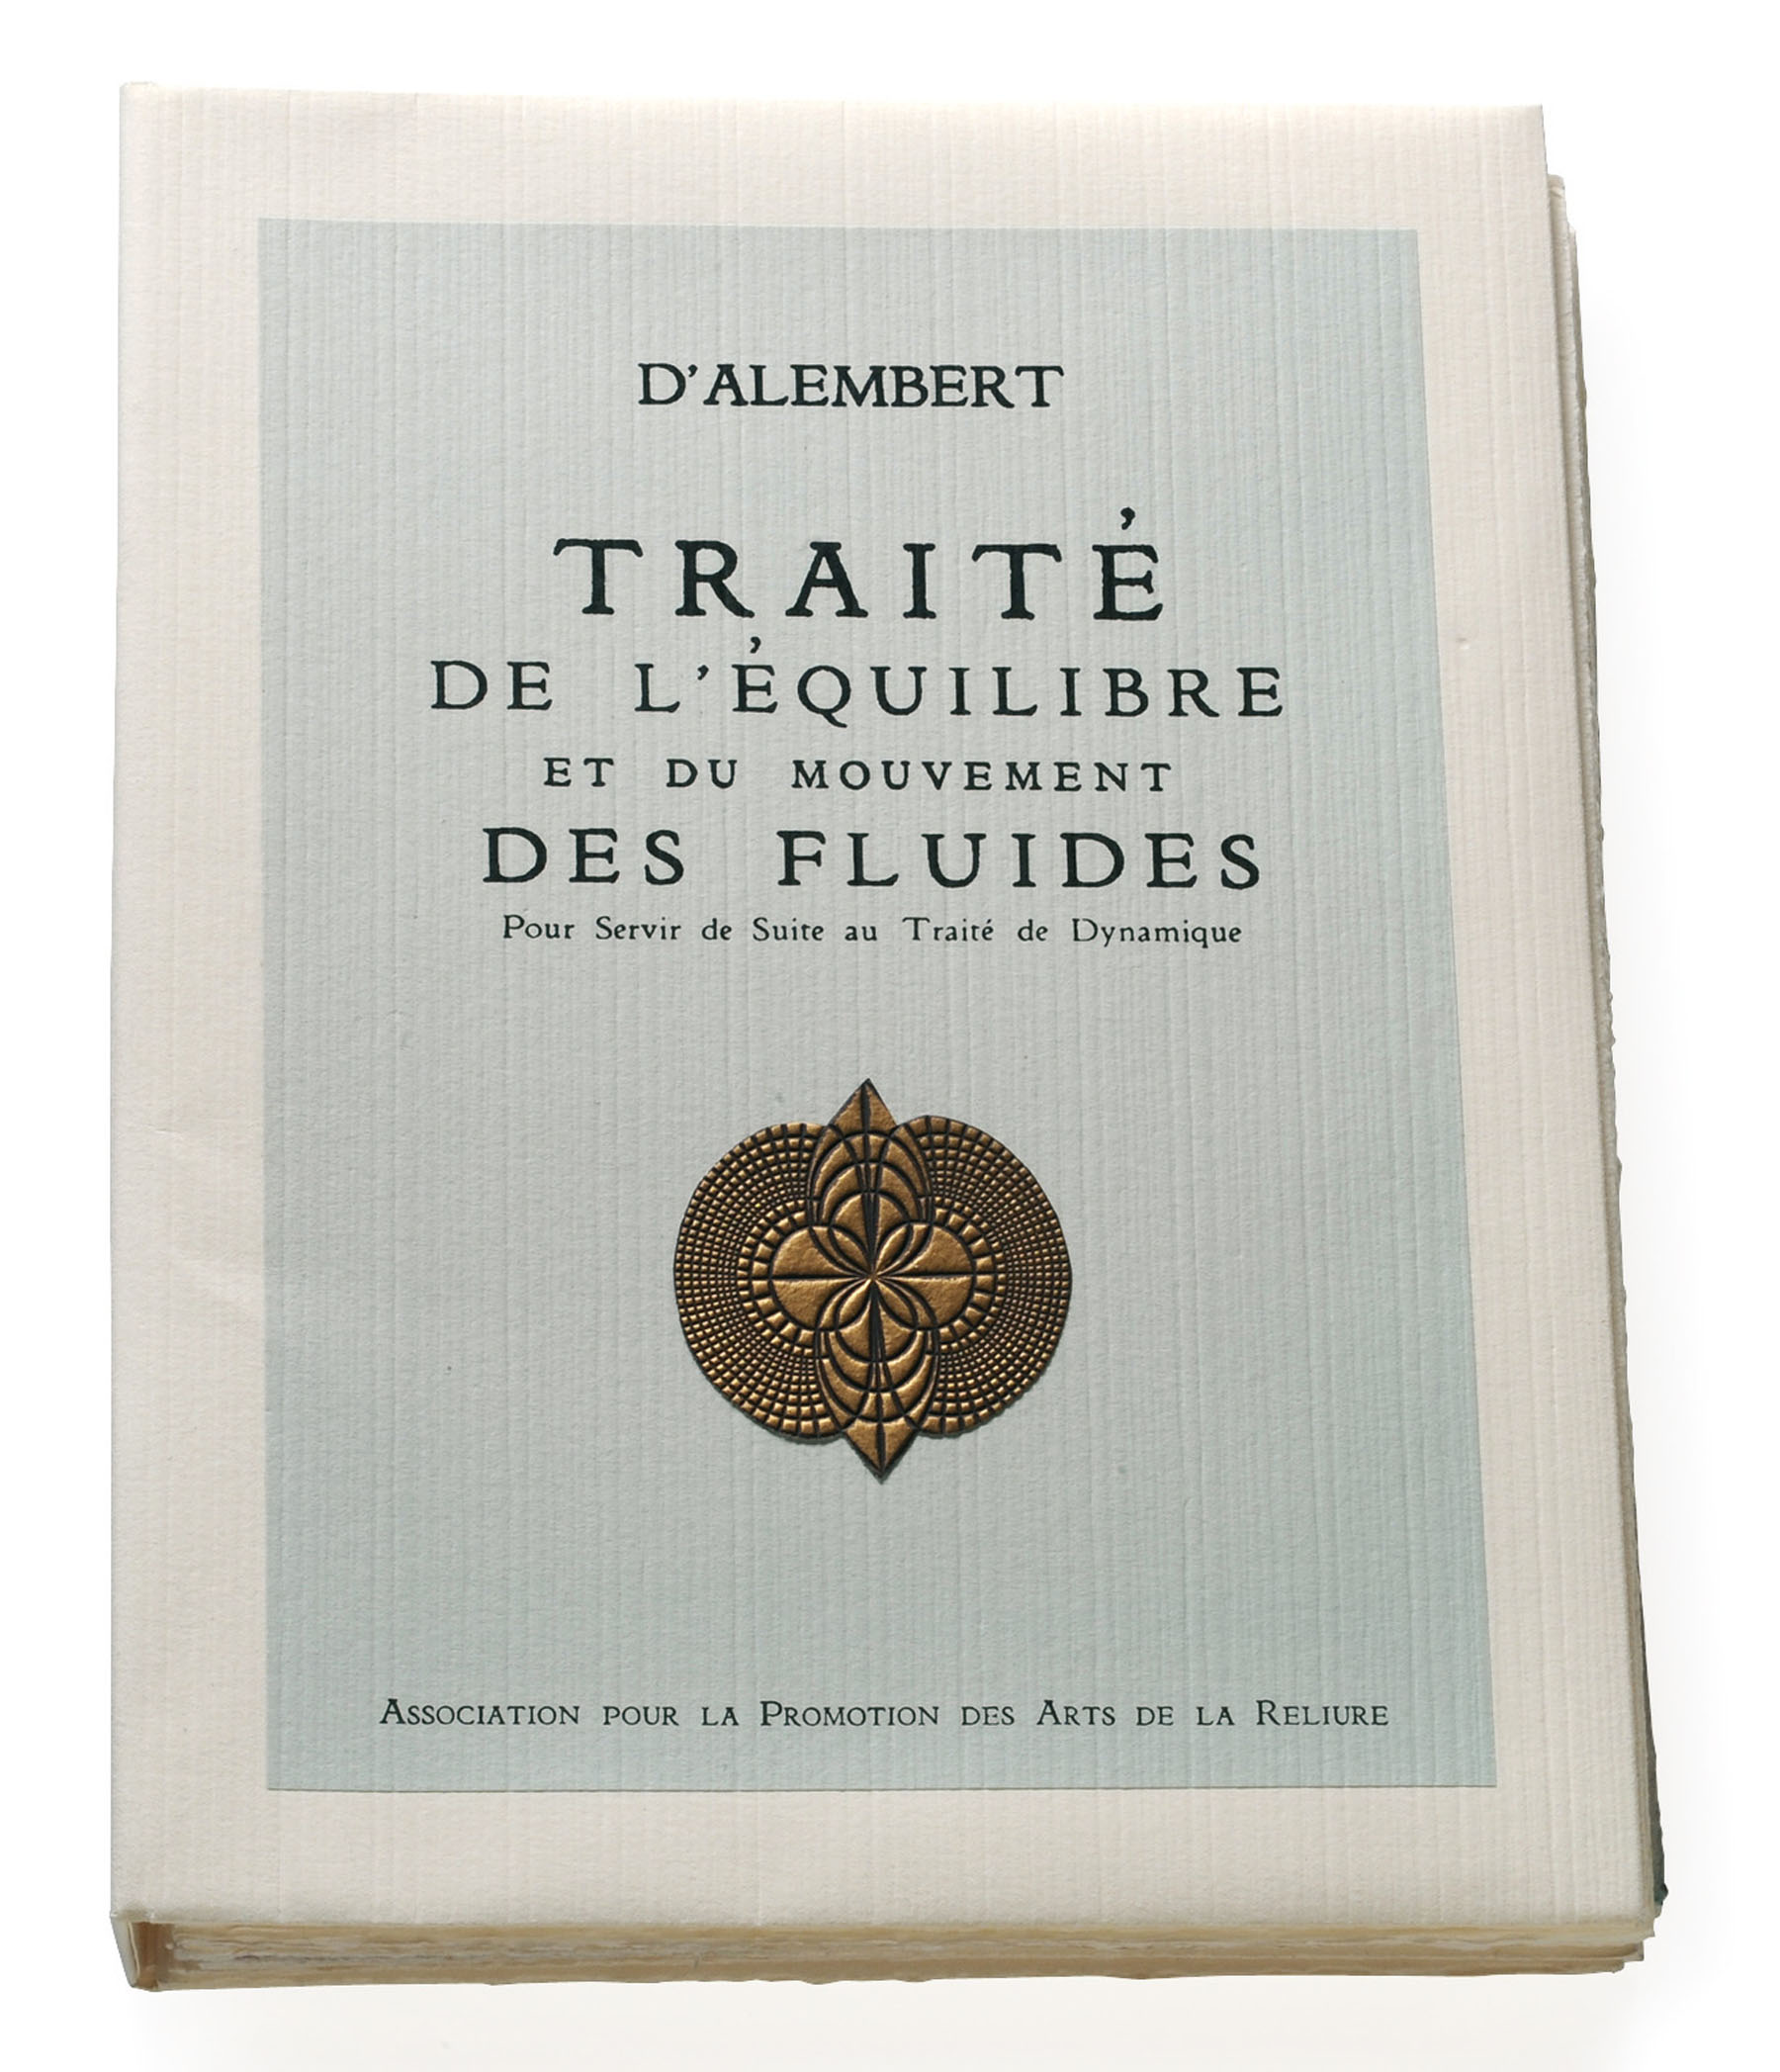 Couverture du "Traité de l'équilibre et de mouvement des fluides" de D'Alembert